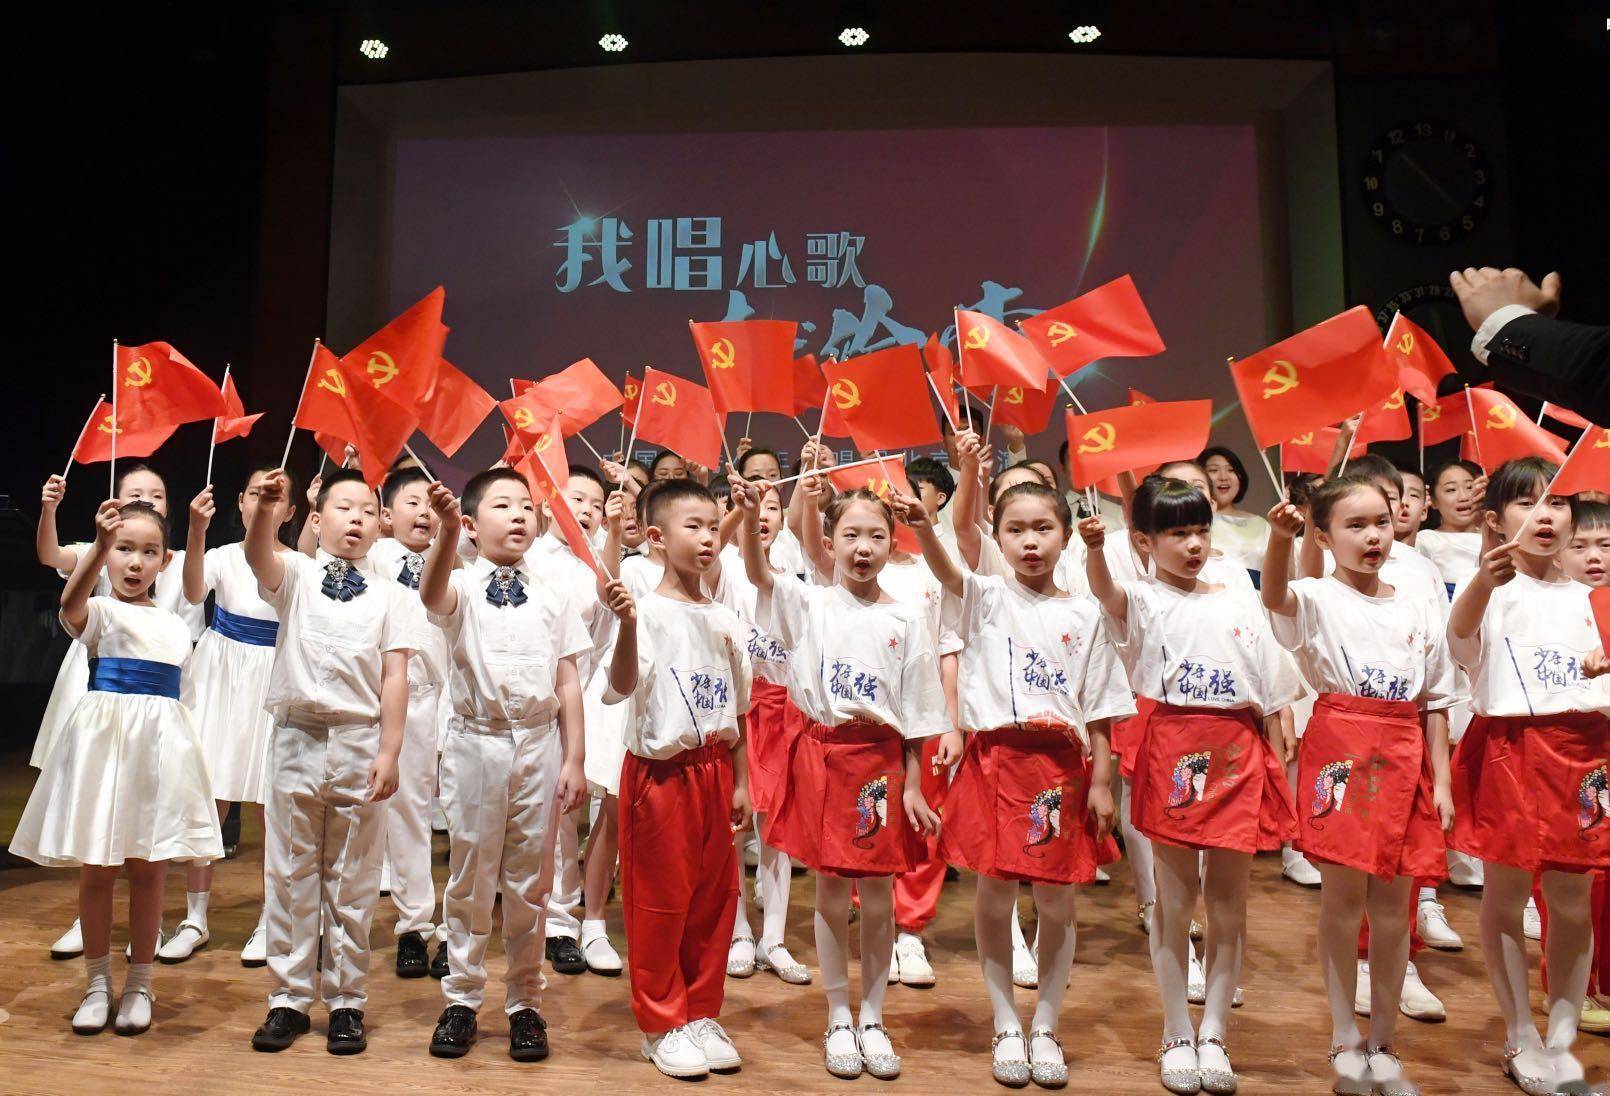 我唱心歌献给党!优秀少年合唱团首场展演在京举行